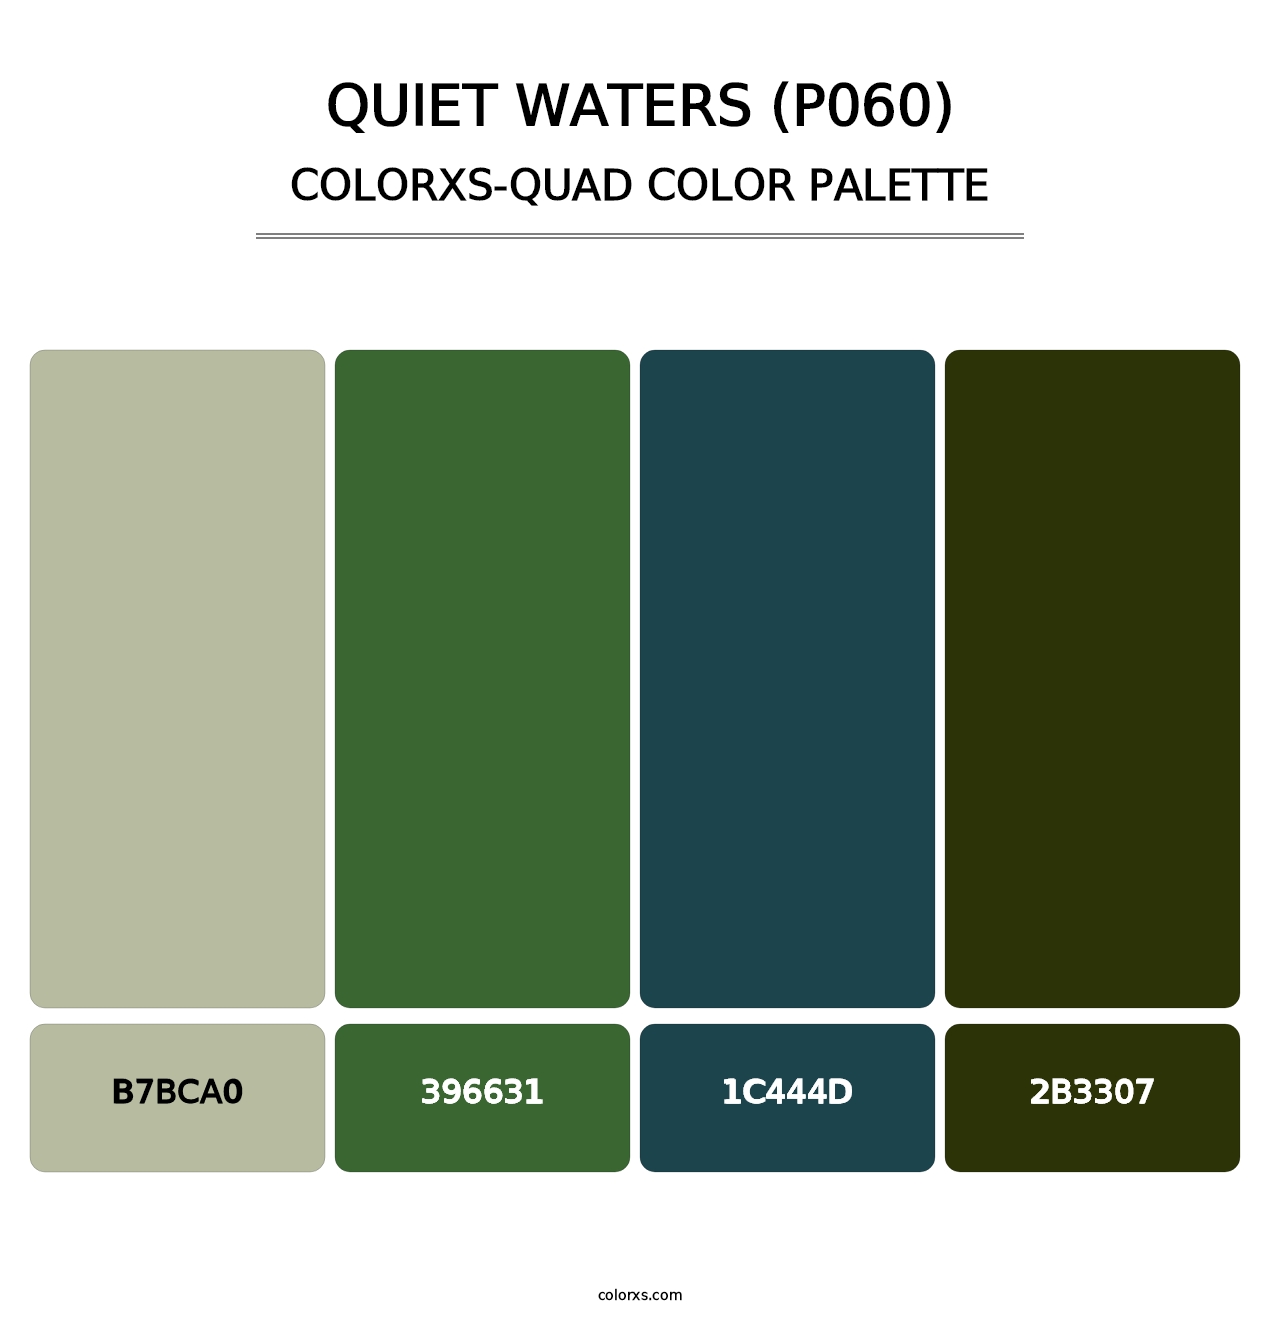 Quiet Waters (P060) - Colorxs Quad Palette